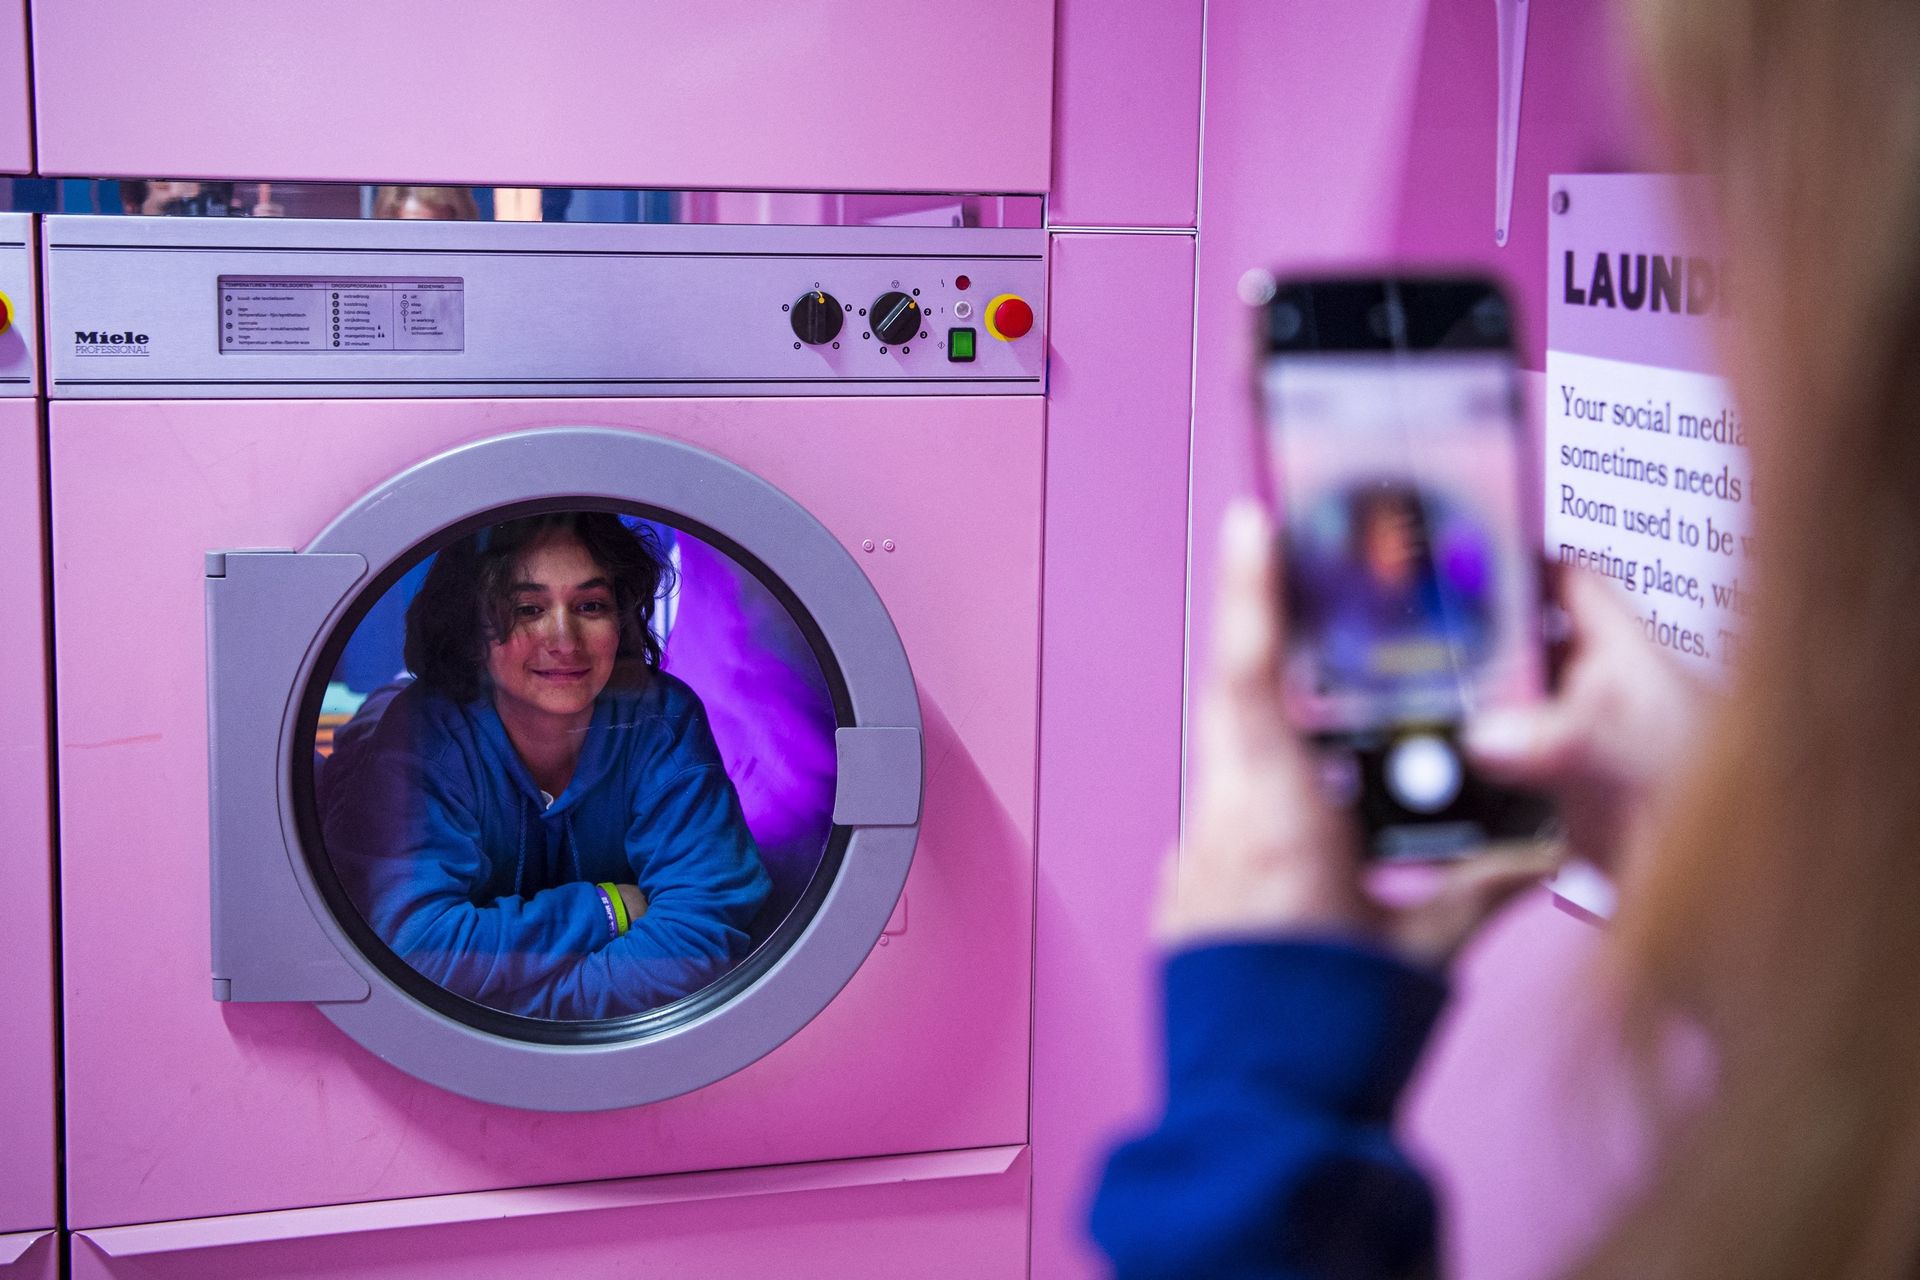 Un selfie dans une machine à laver ?